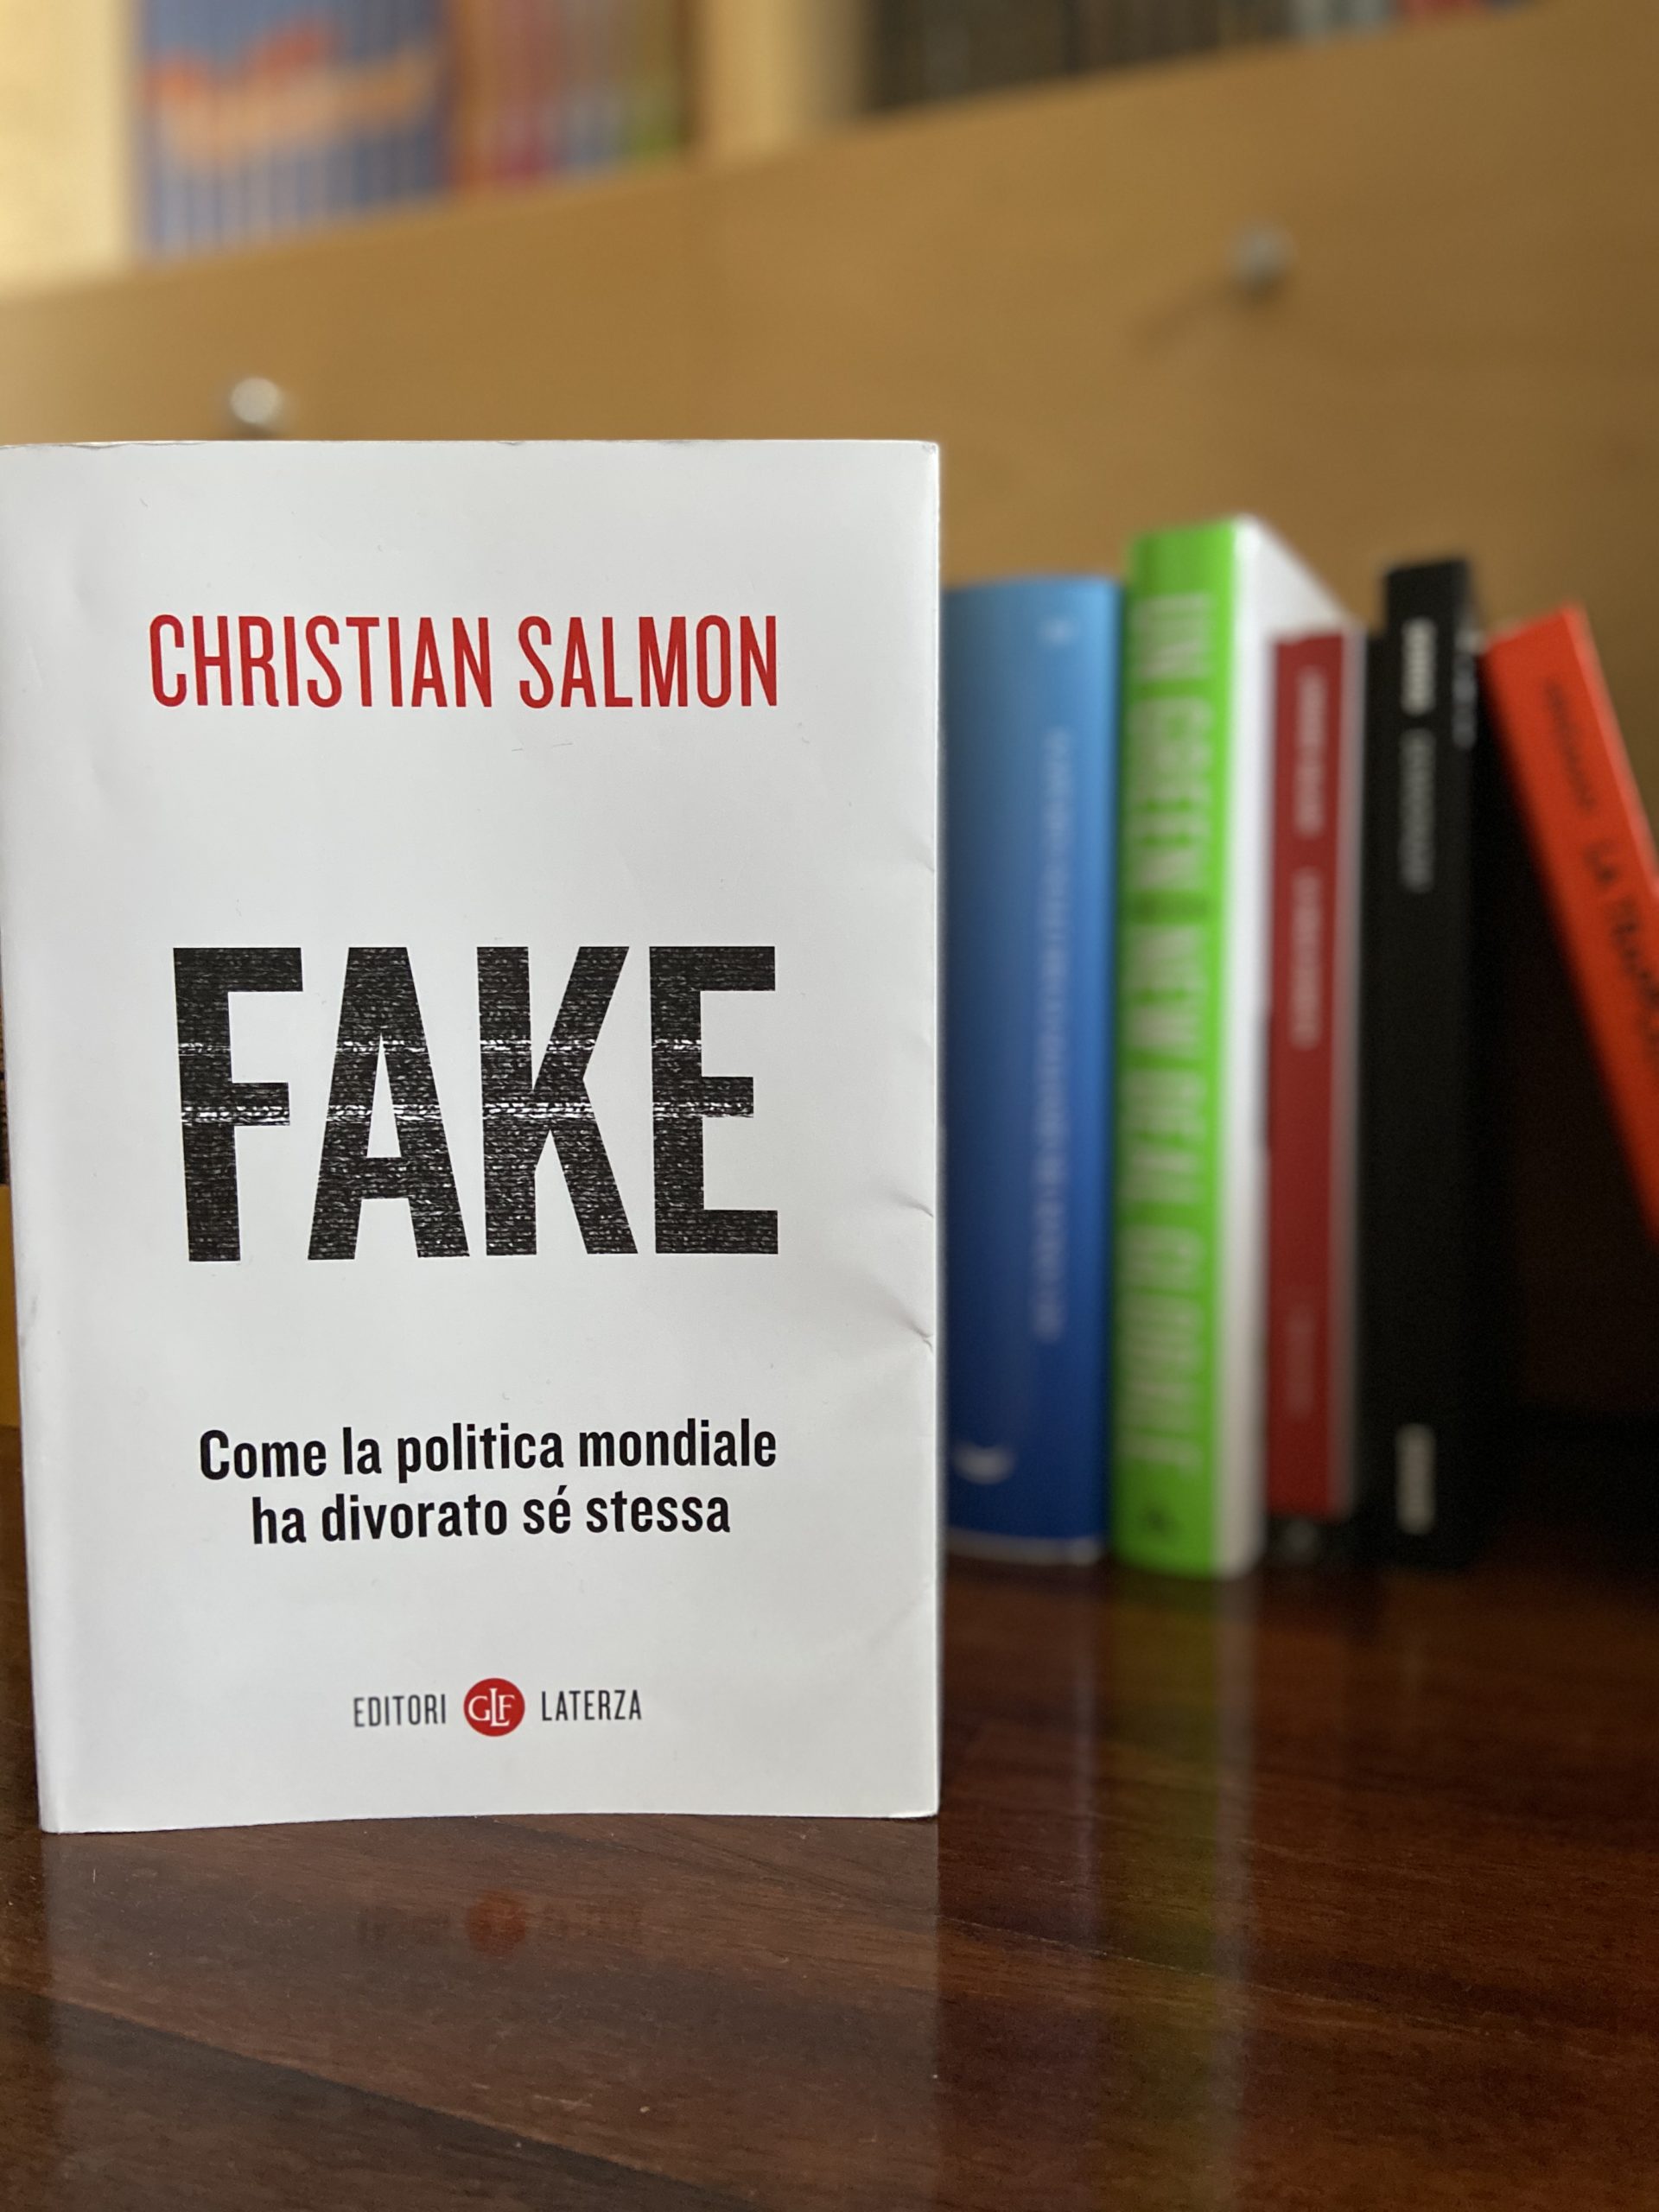 Christian Salmon aggiorna per noi il suo libro “Fake” alla pandemia che stiamo vivendo. ‘L’era dello scontro’ continua. A costo della nostra vita